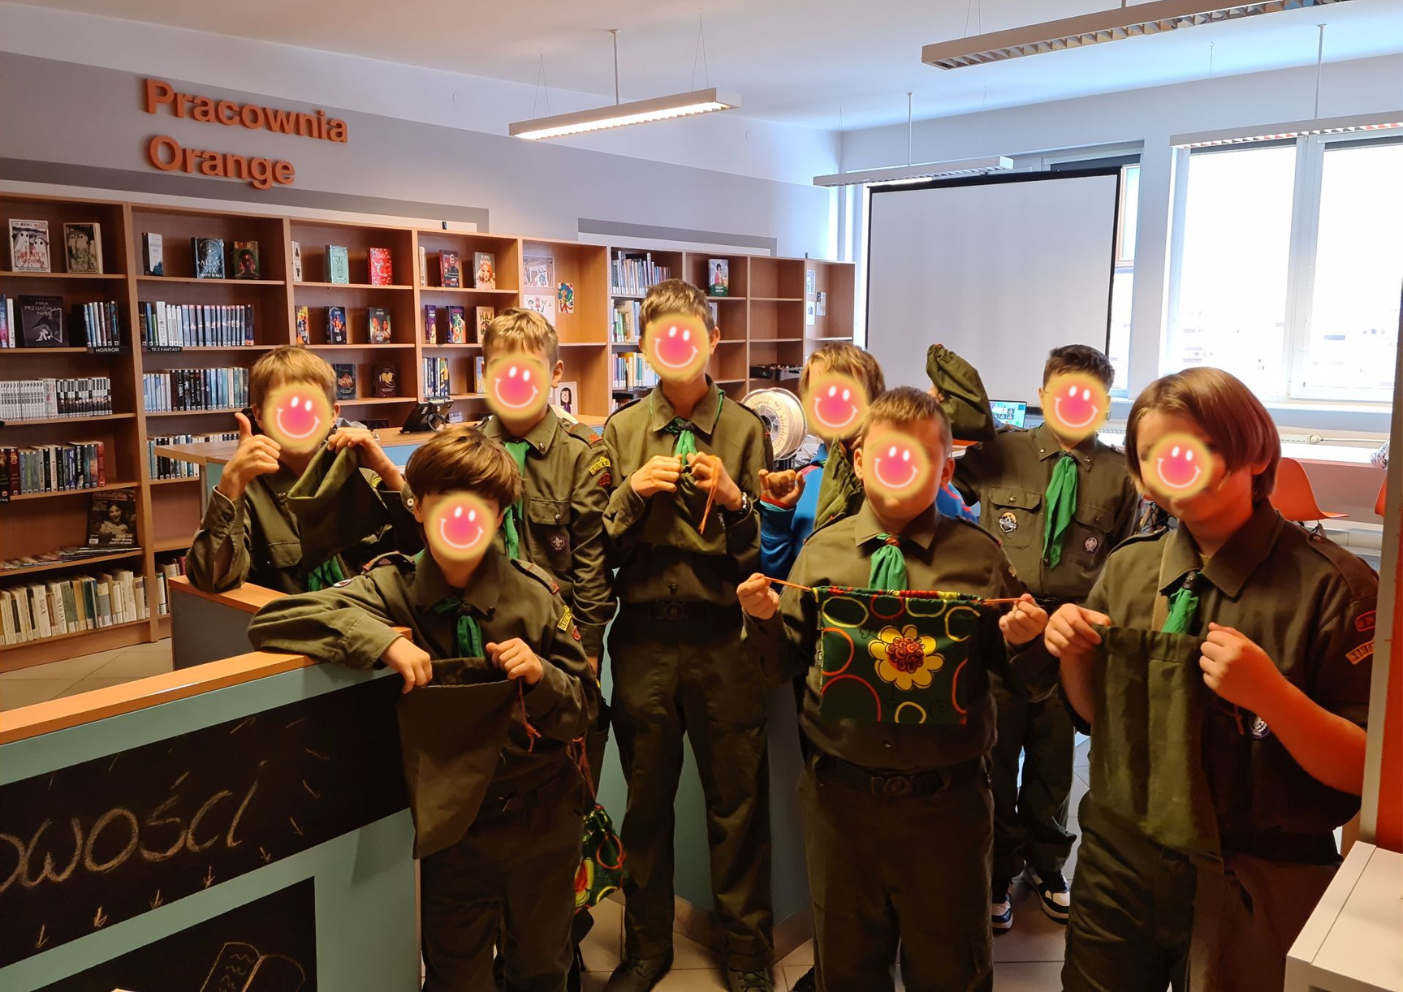 Grupa 8 młodych chłopców w mundurach harcerskich prezentuje uszyte przez siebie woreczki